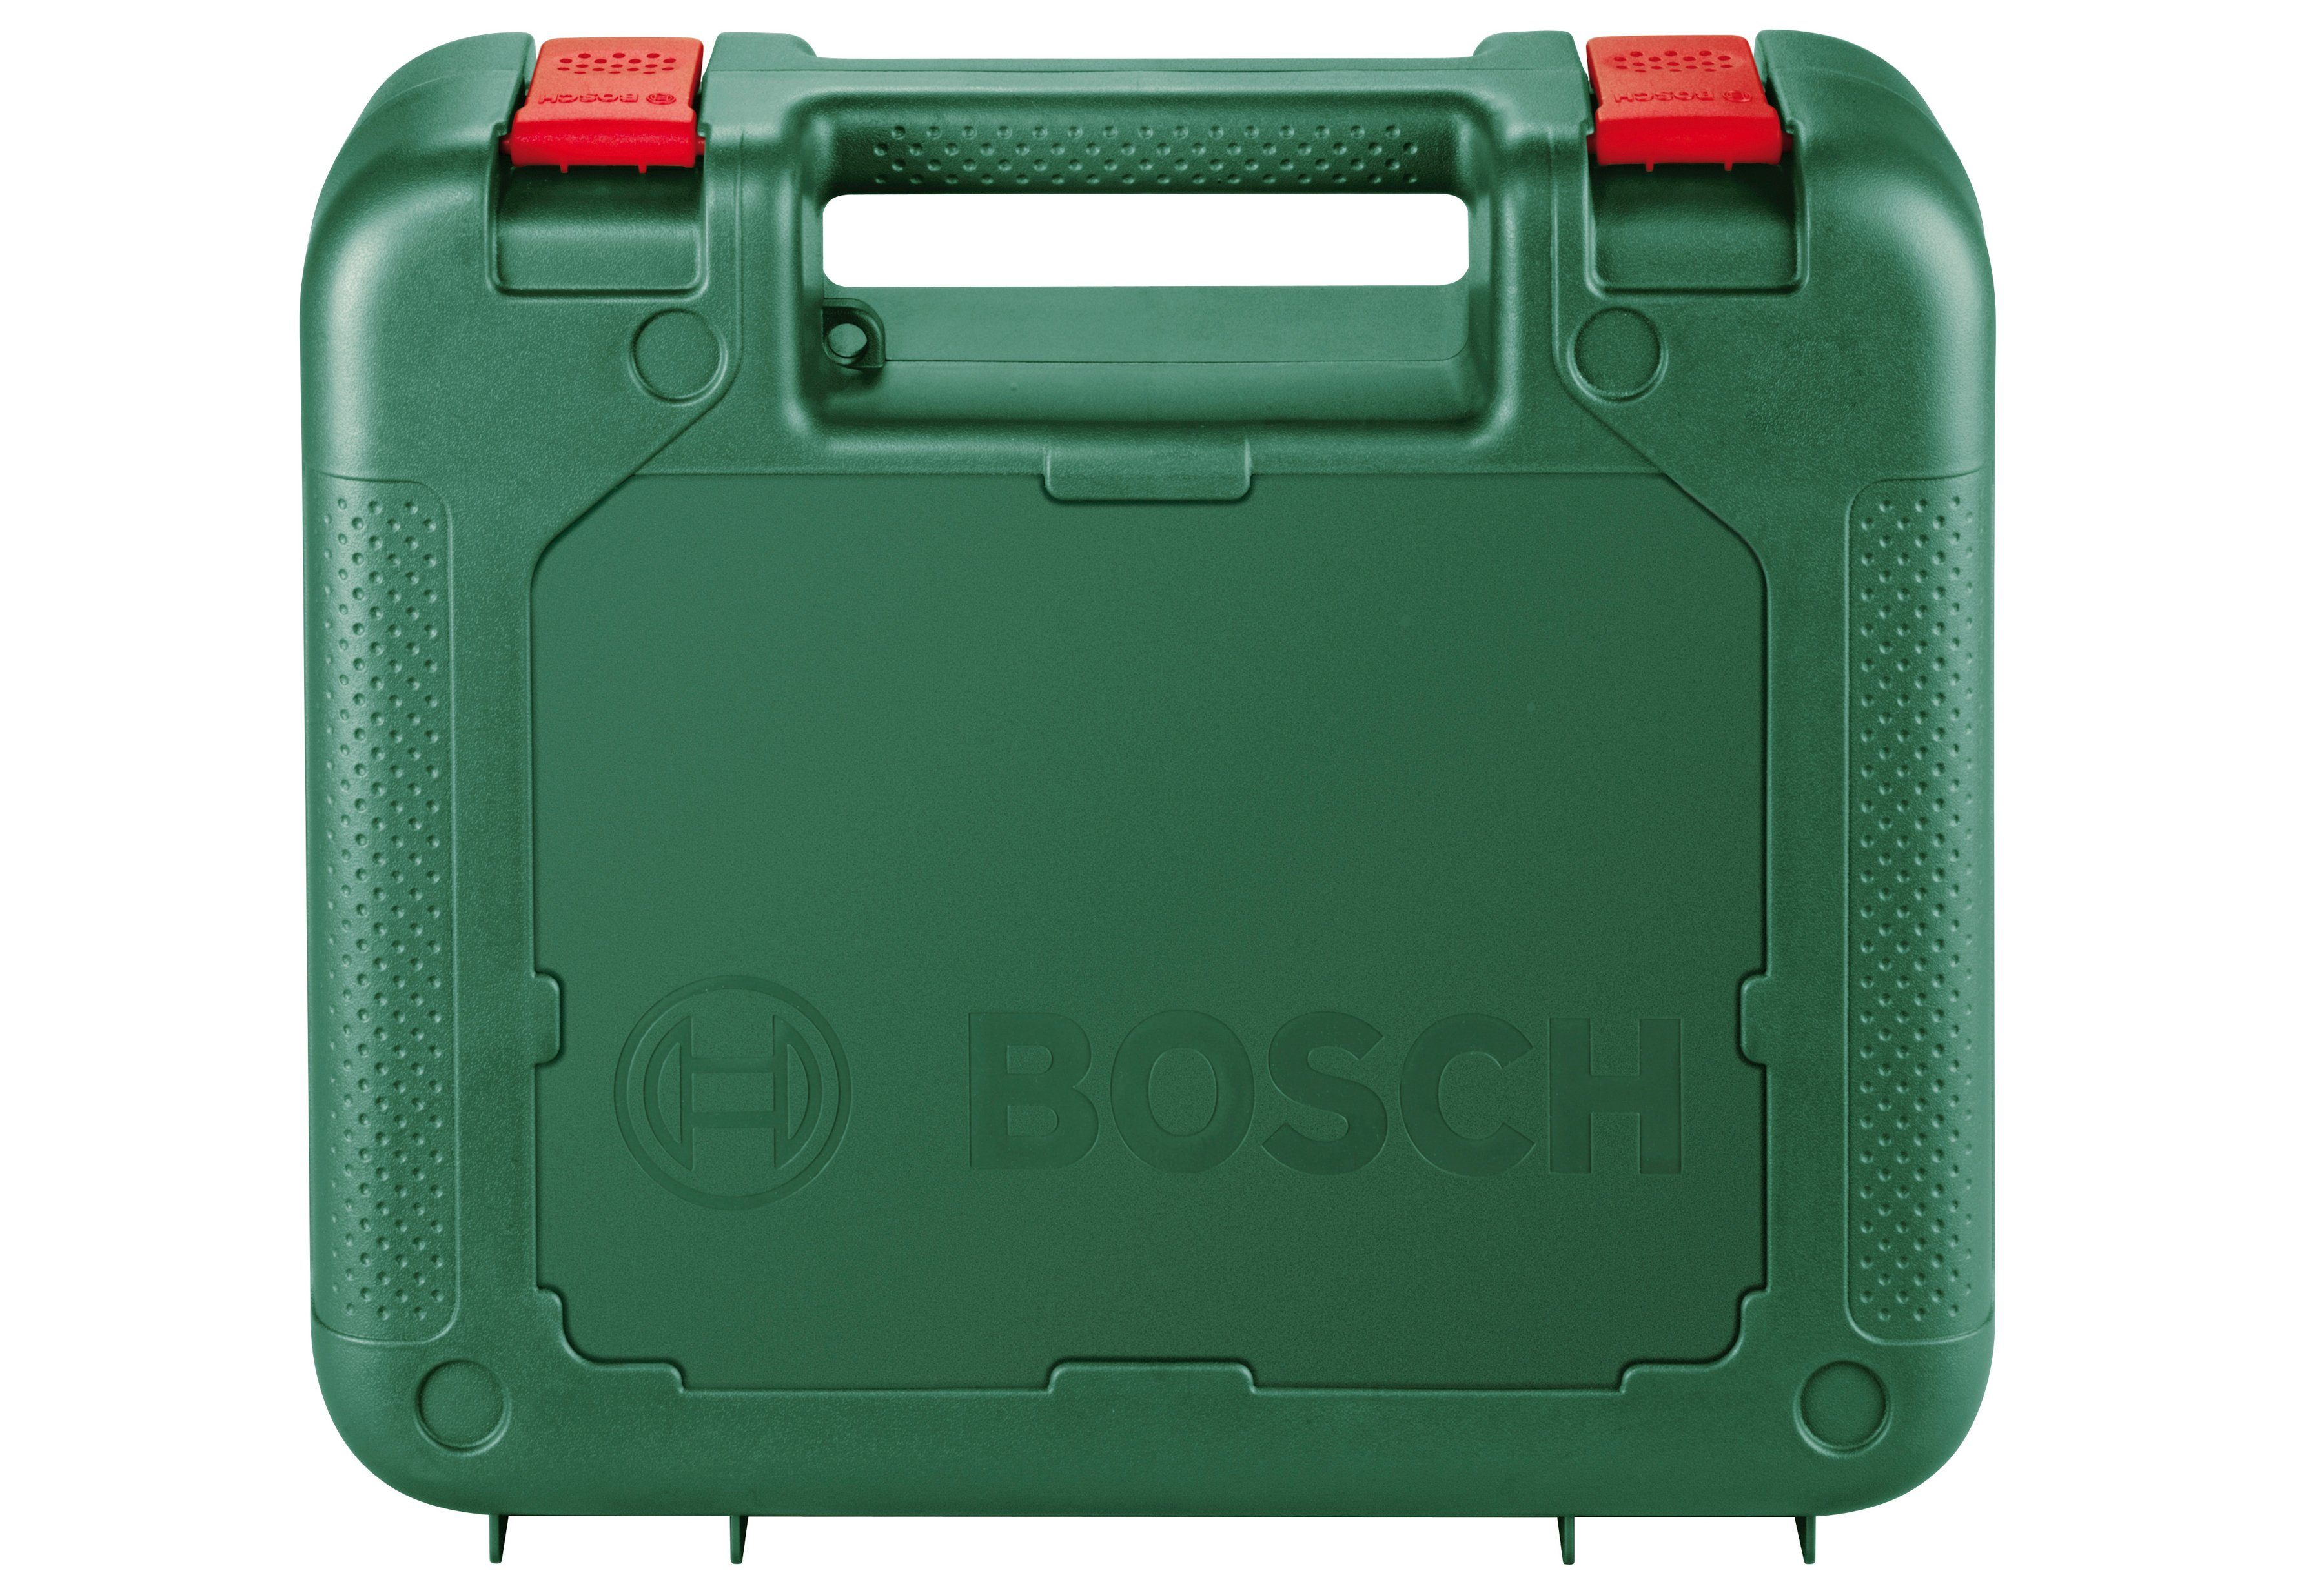 Bosch Stichsäge 500 & PST 700 W Garden E, Home